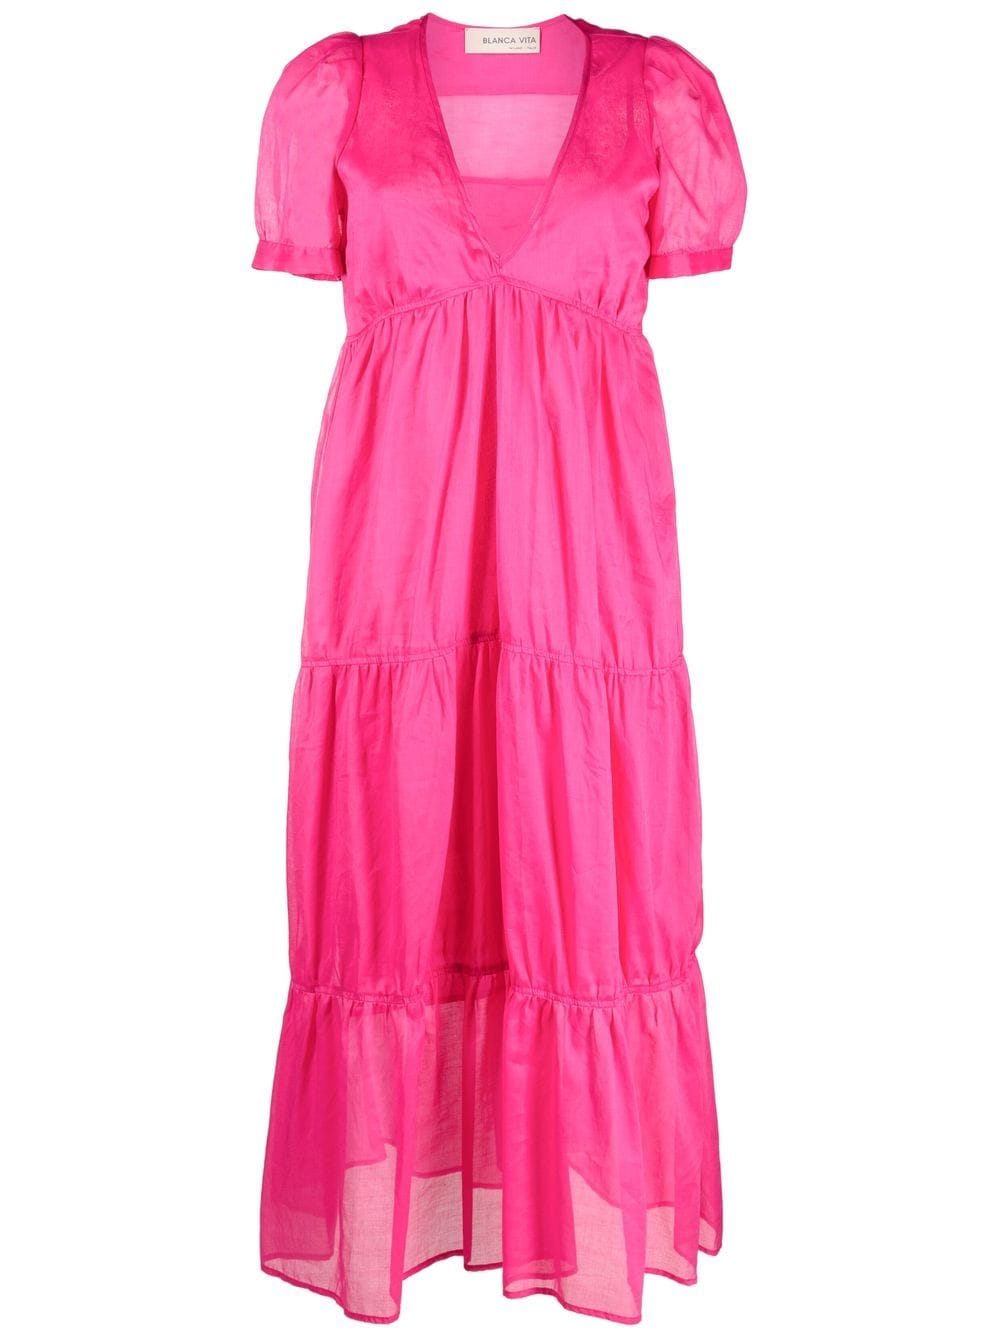 Blanca Vita tiered v-neck dress - Pink von Blanca Vita